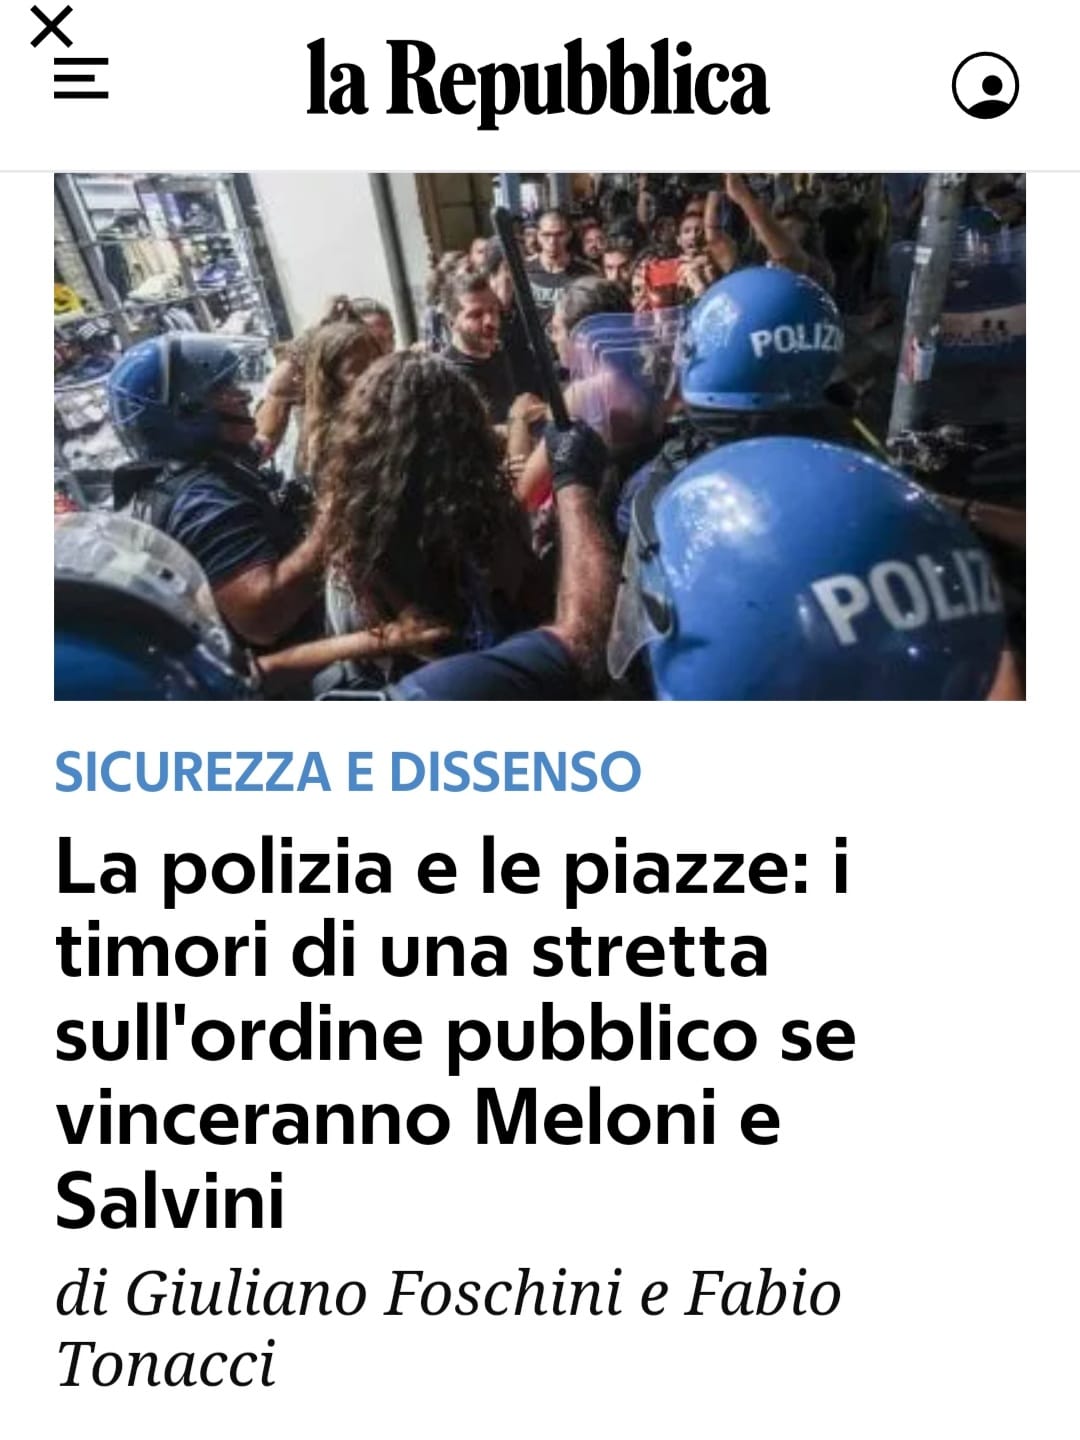 Castellino (ITALIA LIBERA): La Repubblica giornale della vergogna!